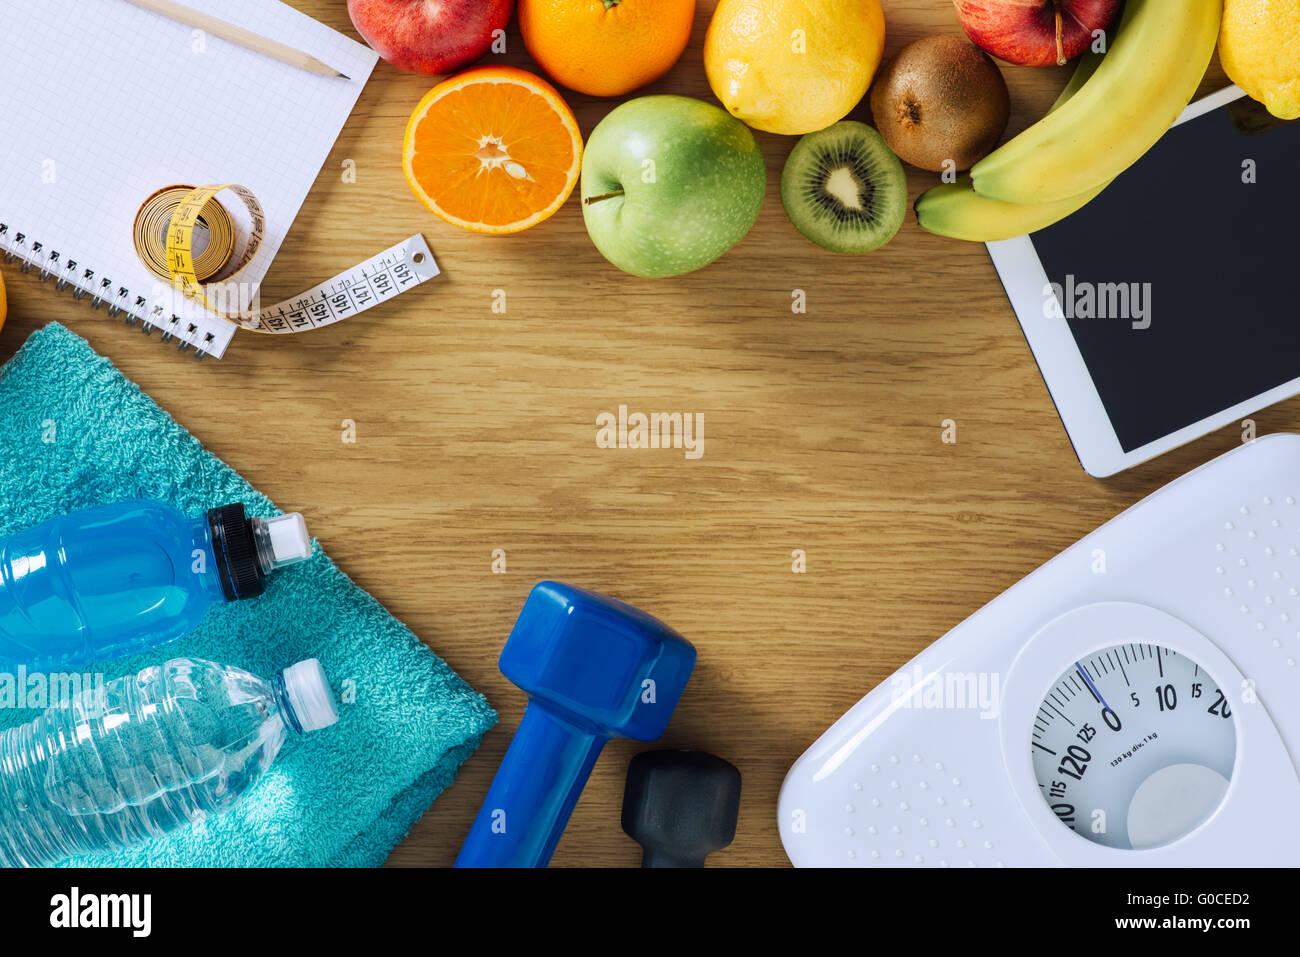 Concepto de Fitness y pérdida de peso, pesas, escala, toallas blancas, fruta, cinta métrica y tableta digital sobre una tabla de madera Foto de stock